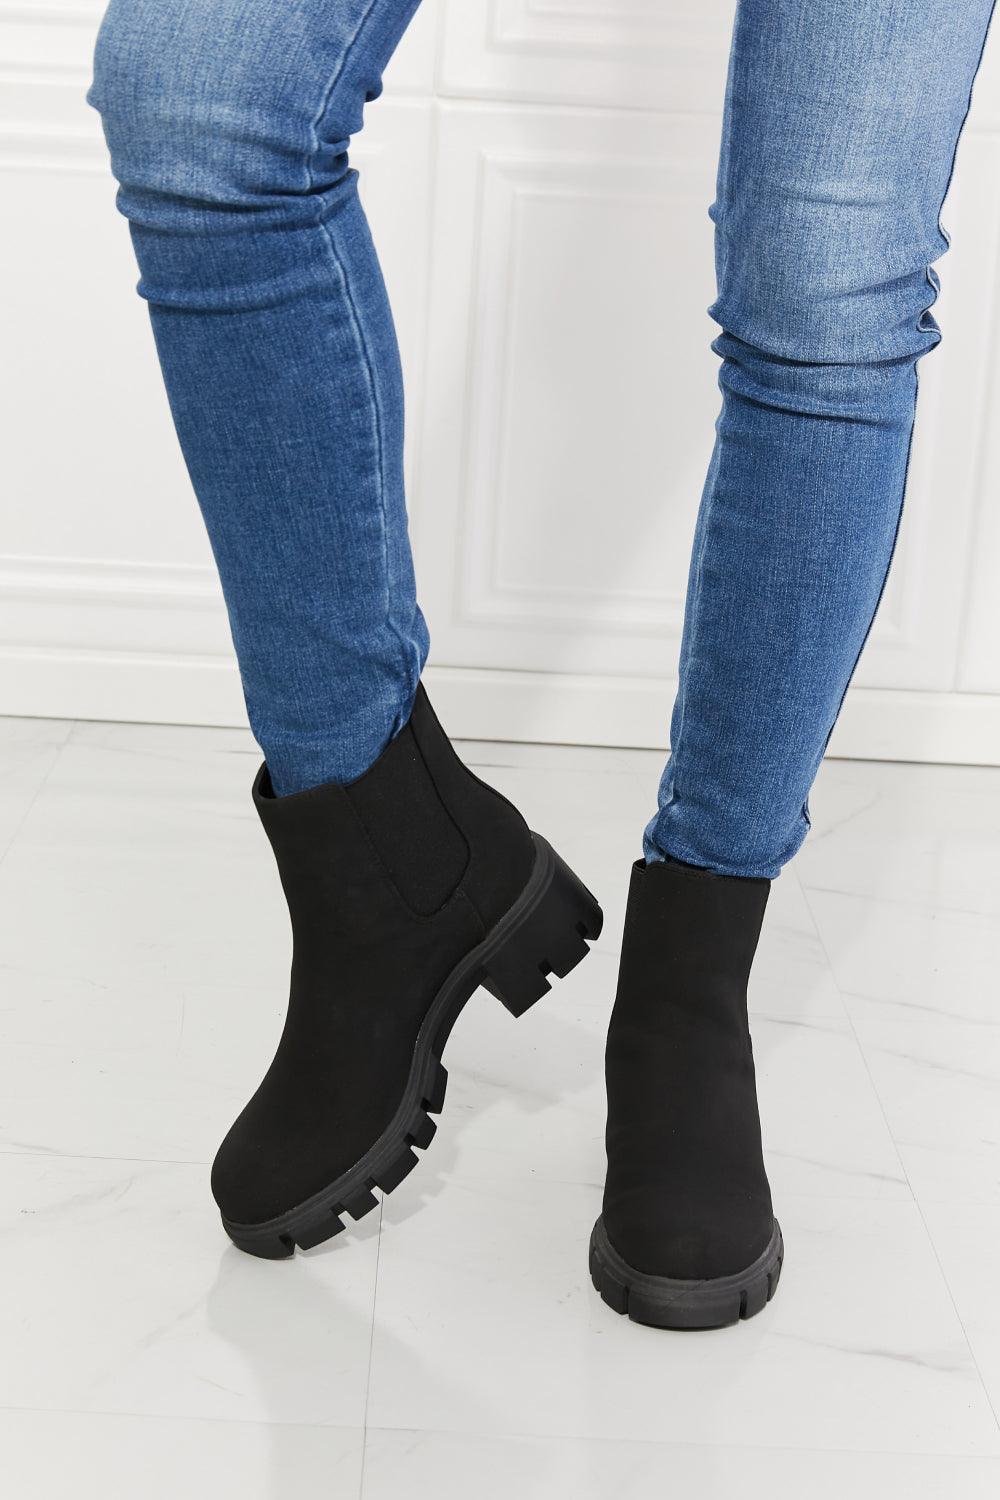 MMShoes Rich Caress Lug Sole Black Chelsea Boots - MXSTUDIO.COM